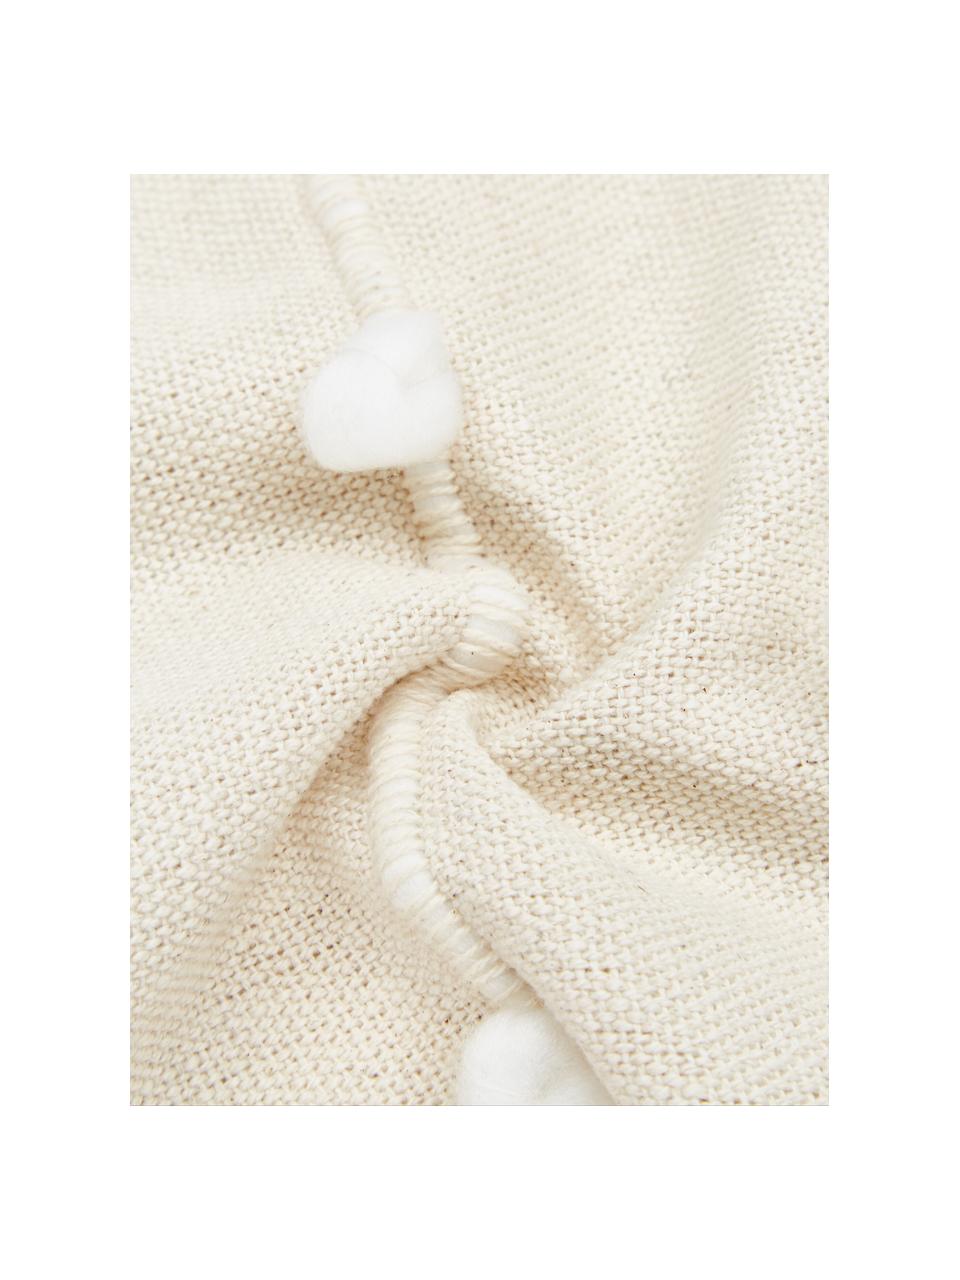 Kissen Bubble mit Verzierungen, mit Inlett, Bezug: 100% Baumwolle, Gebrochenes Weiss, Weiss, 45 x 45 cm